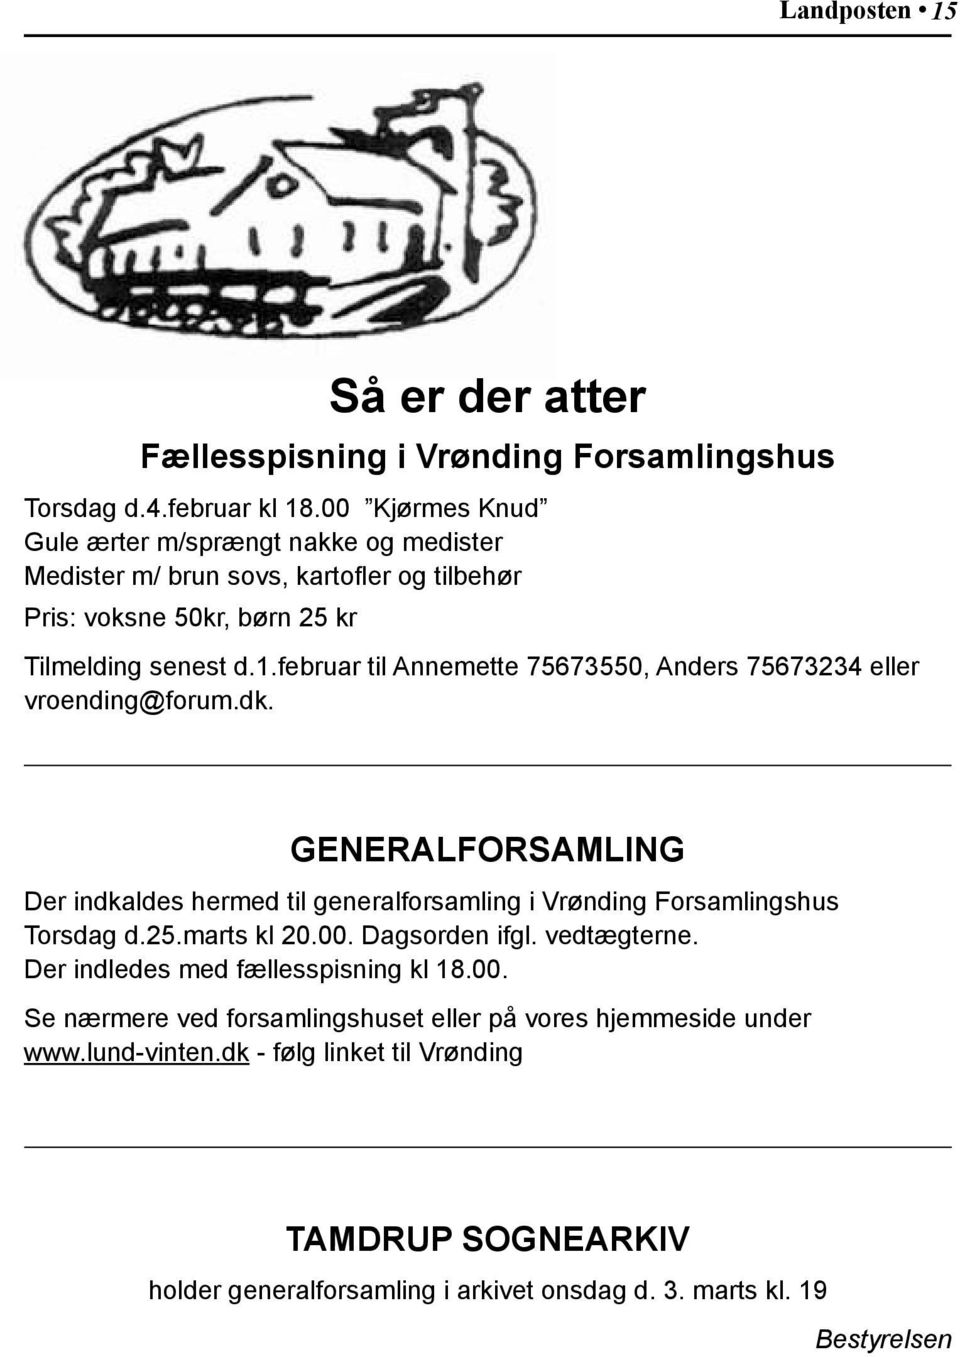 februar til Annemette 75673550, Anders 75673234 eller vroending@forum.dk. GENERALFORSAMLING Der indkaldes hermed til generalforsamling i Vrønding Forsamlingshus Torsdag d.25.